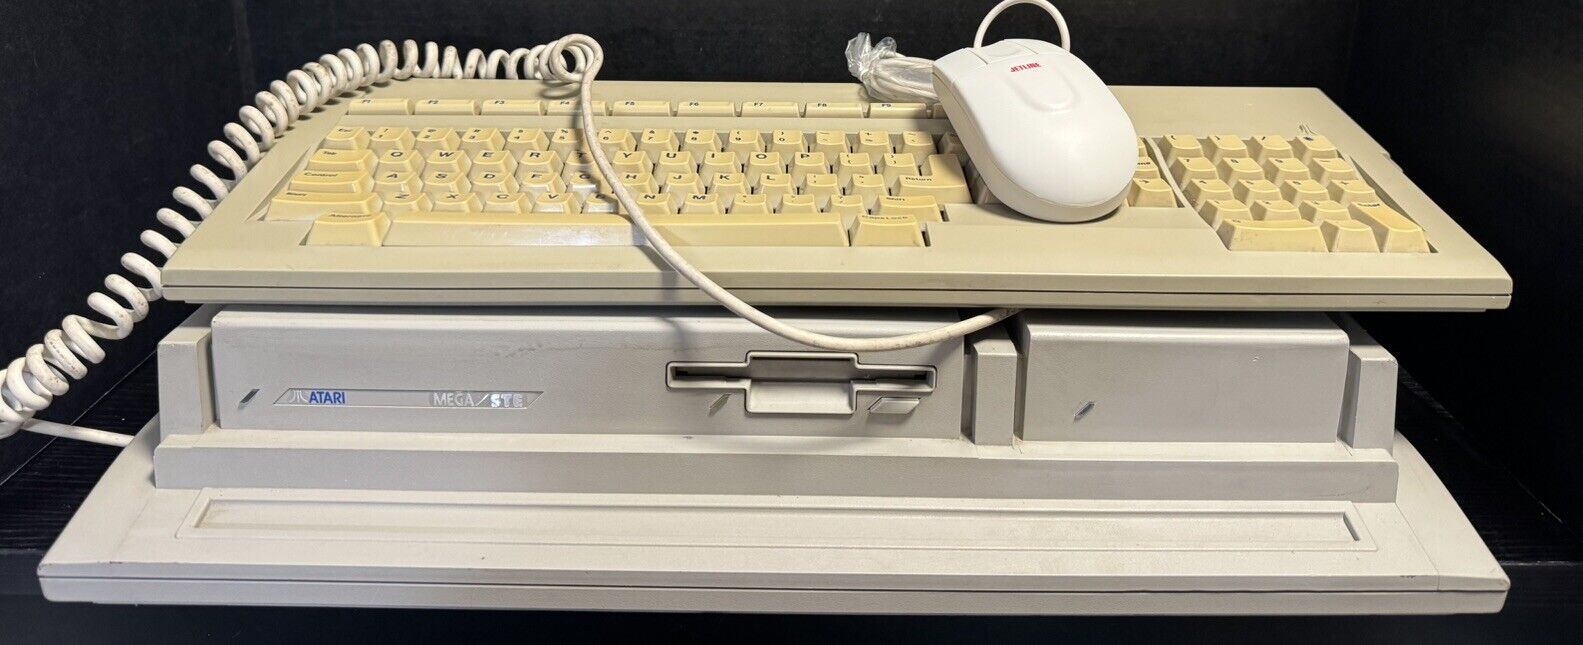 Atari Mega STE System - 4MB RAM, 84MB SCSI, 2.06 TOS, Keyboard, Mouse